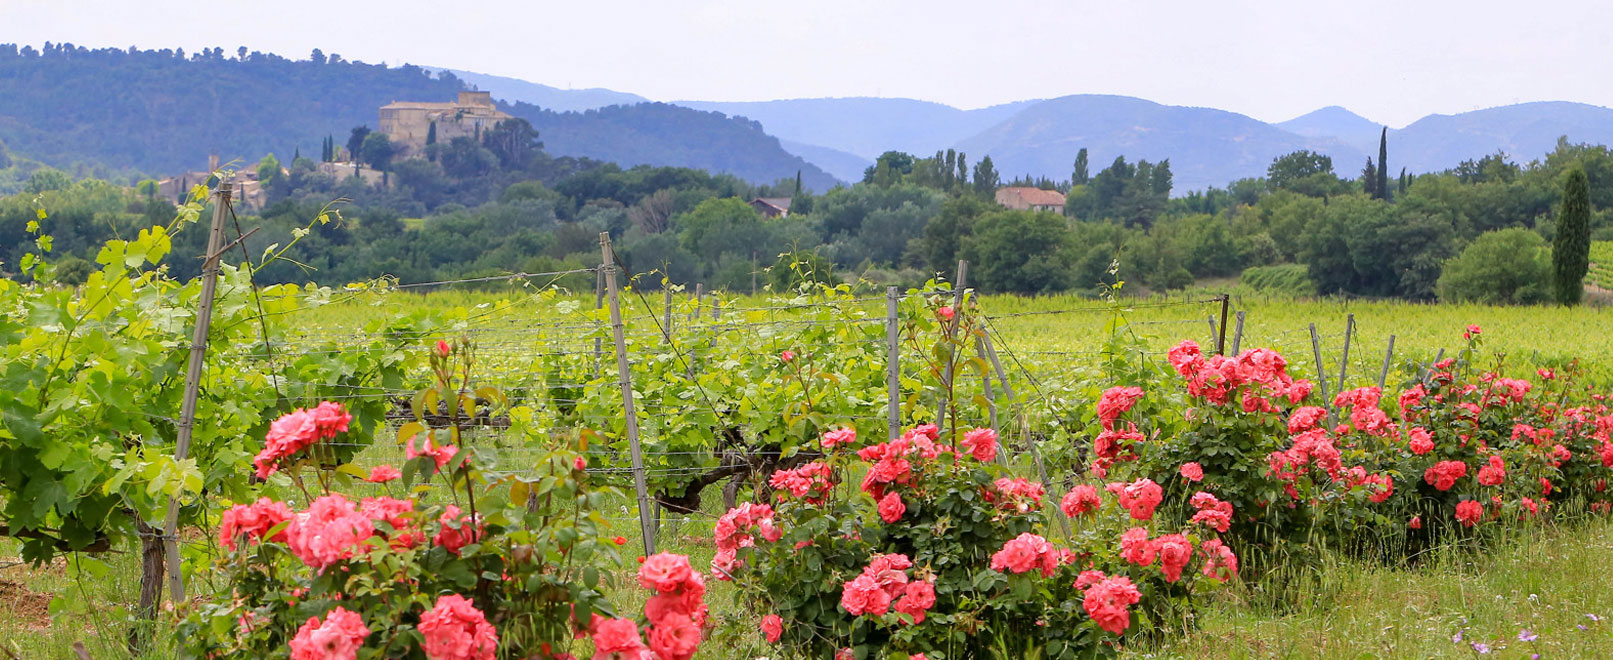 Ansouis vineyards © Hocquel